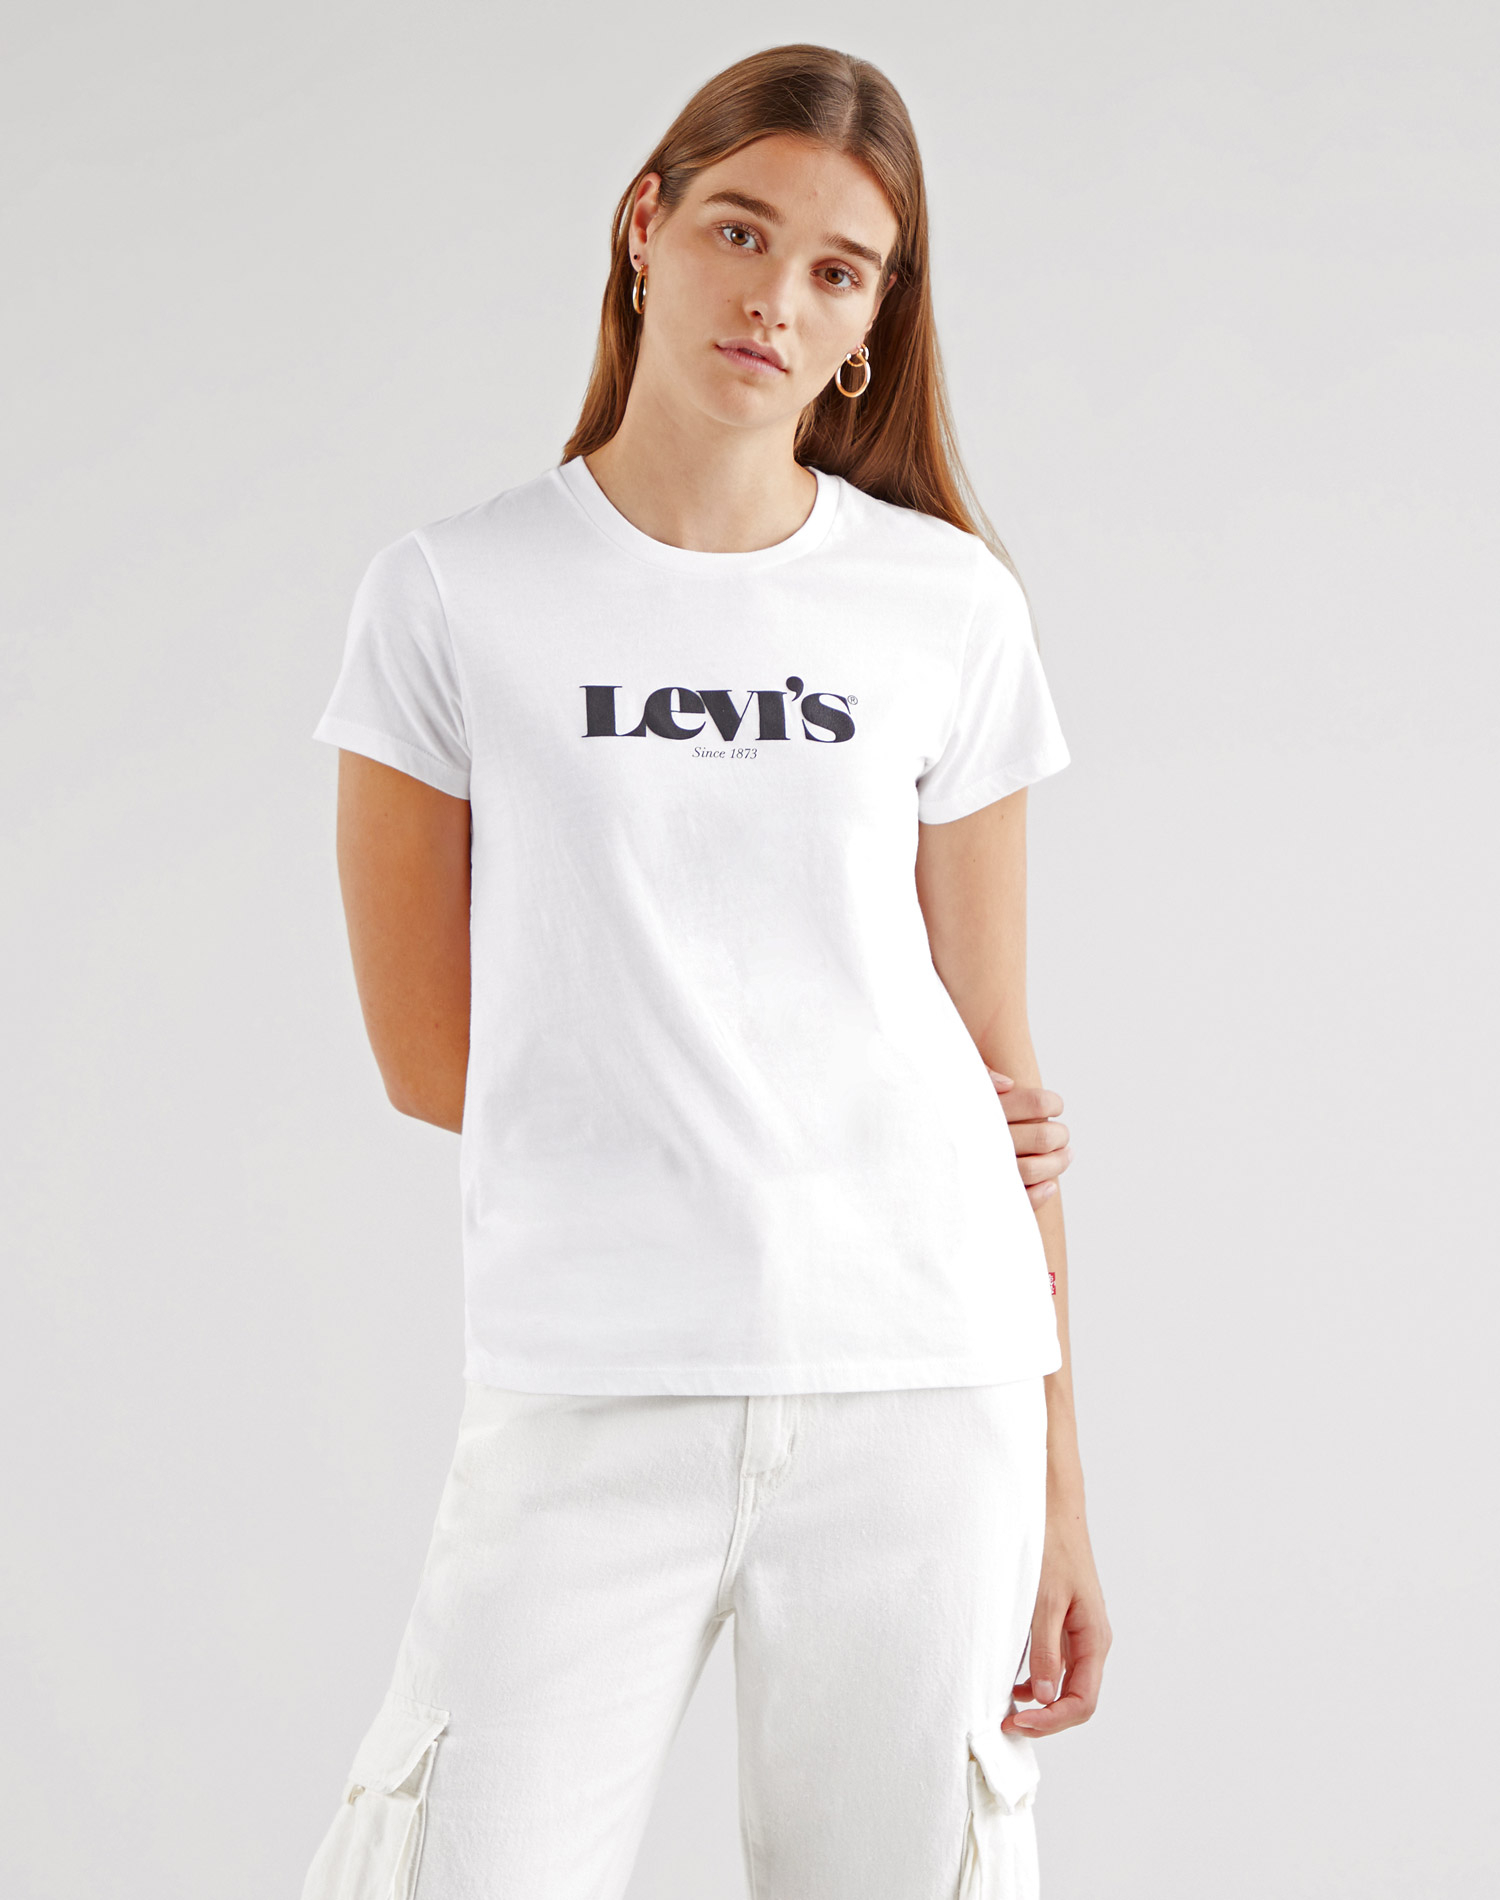 Levi's samarreta de dona de màniga curta 17369-1249 blanca